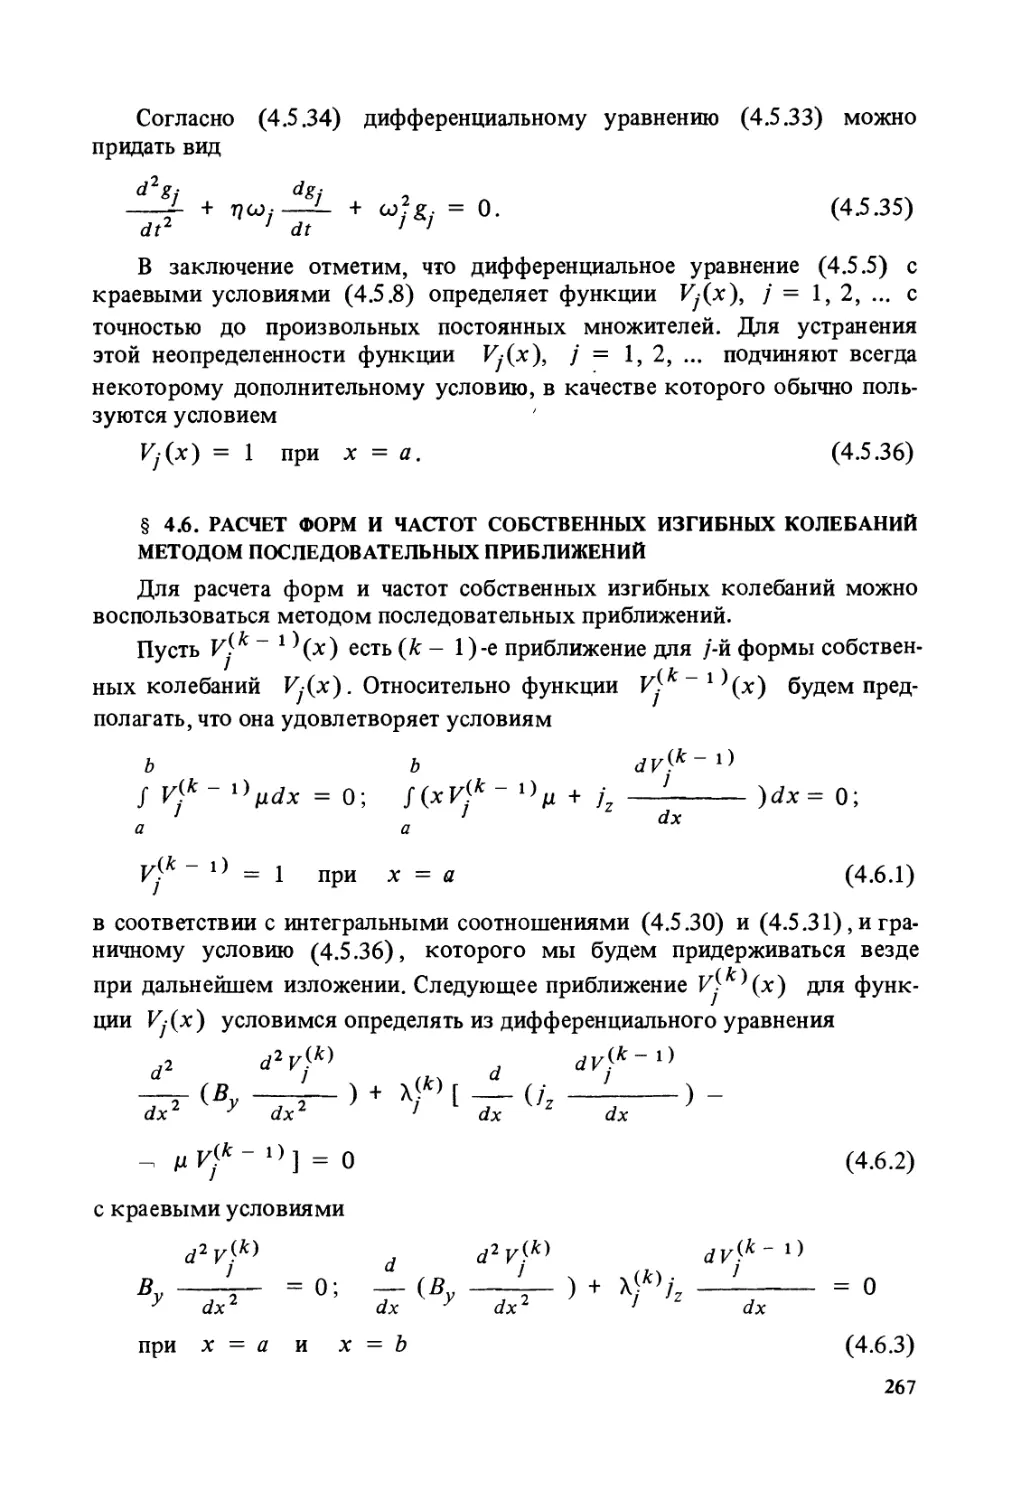 § 4.6. Расчет форм и частот собственных изгибных колебаний методом последовательных приближений